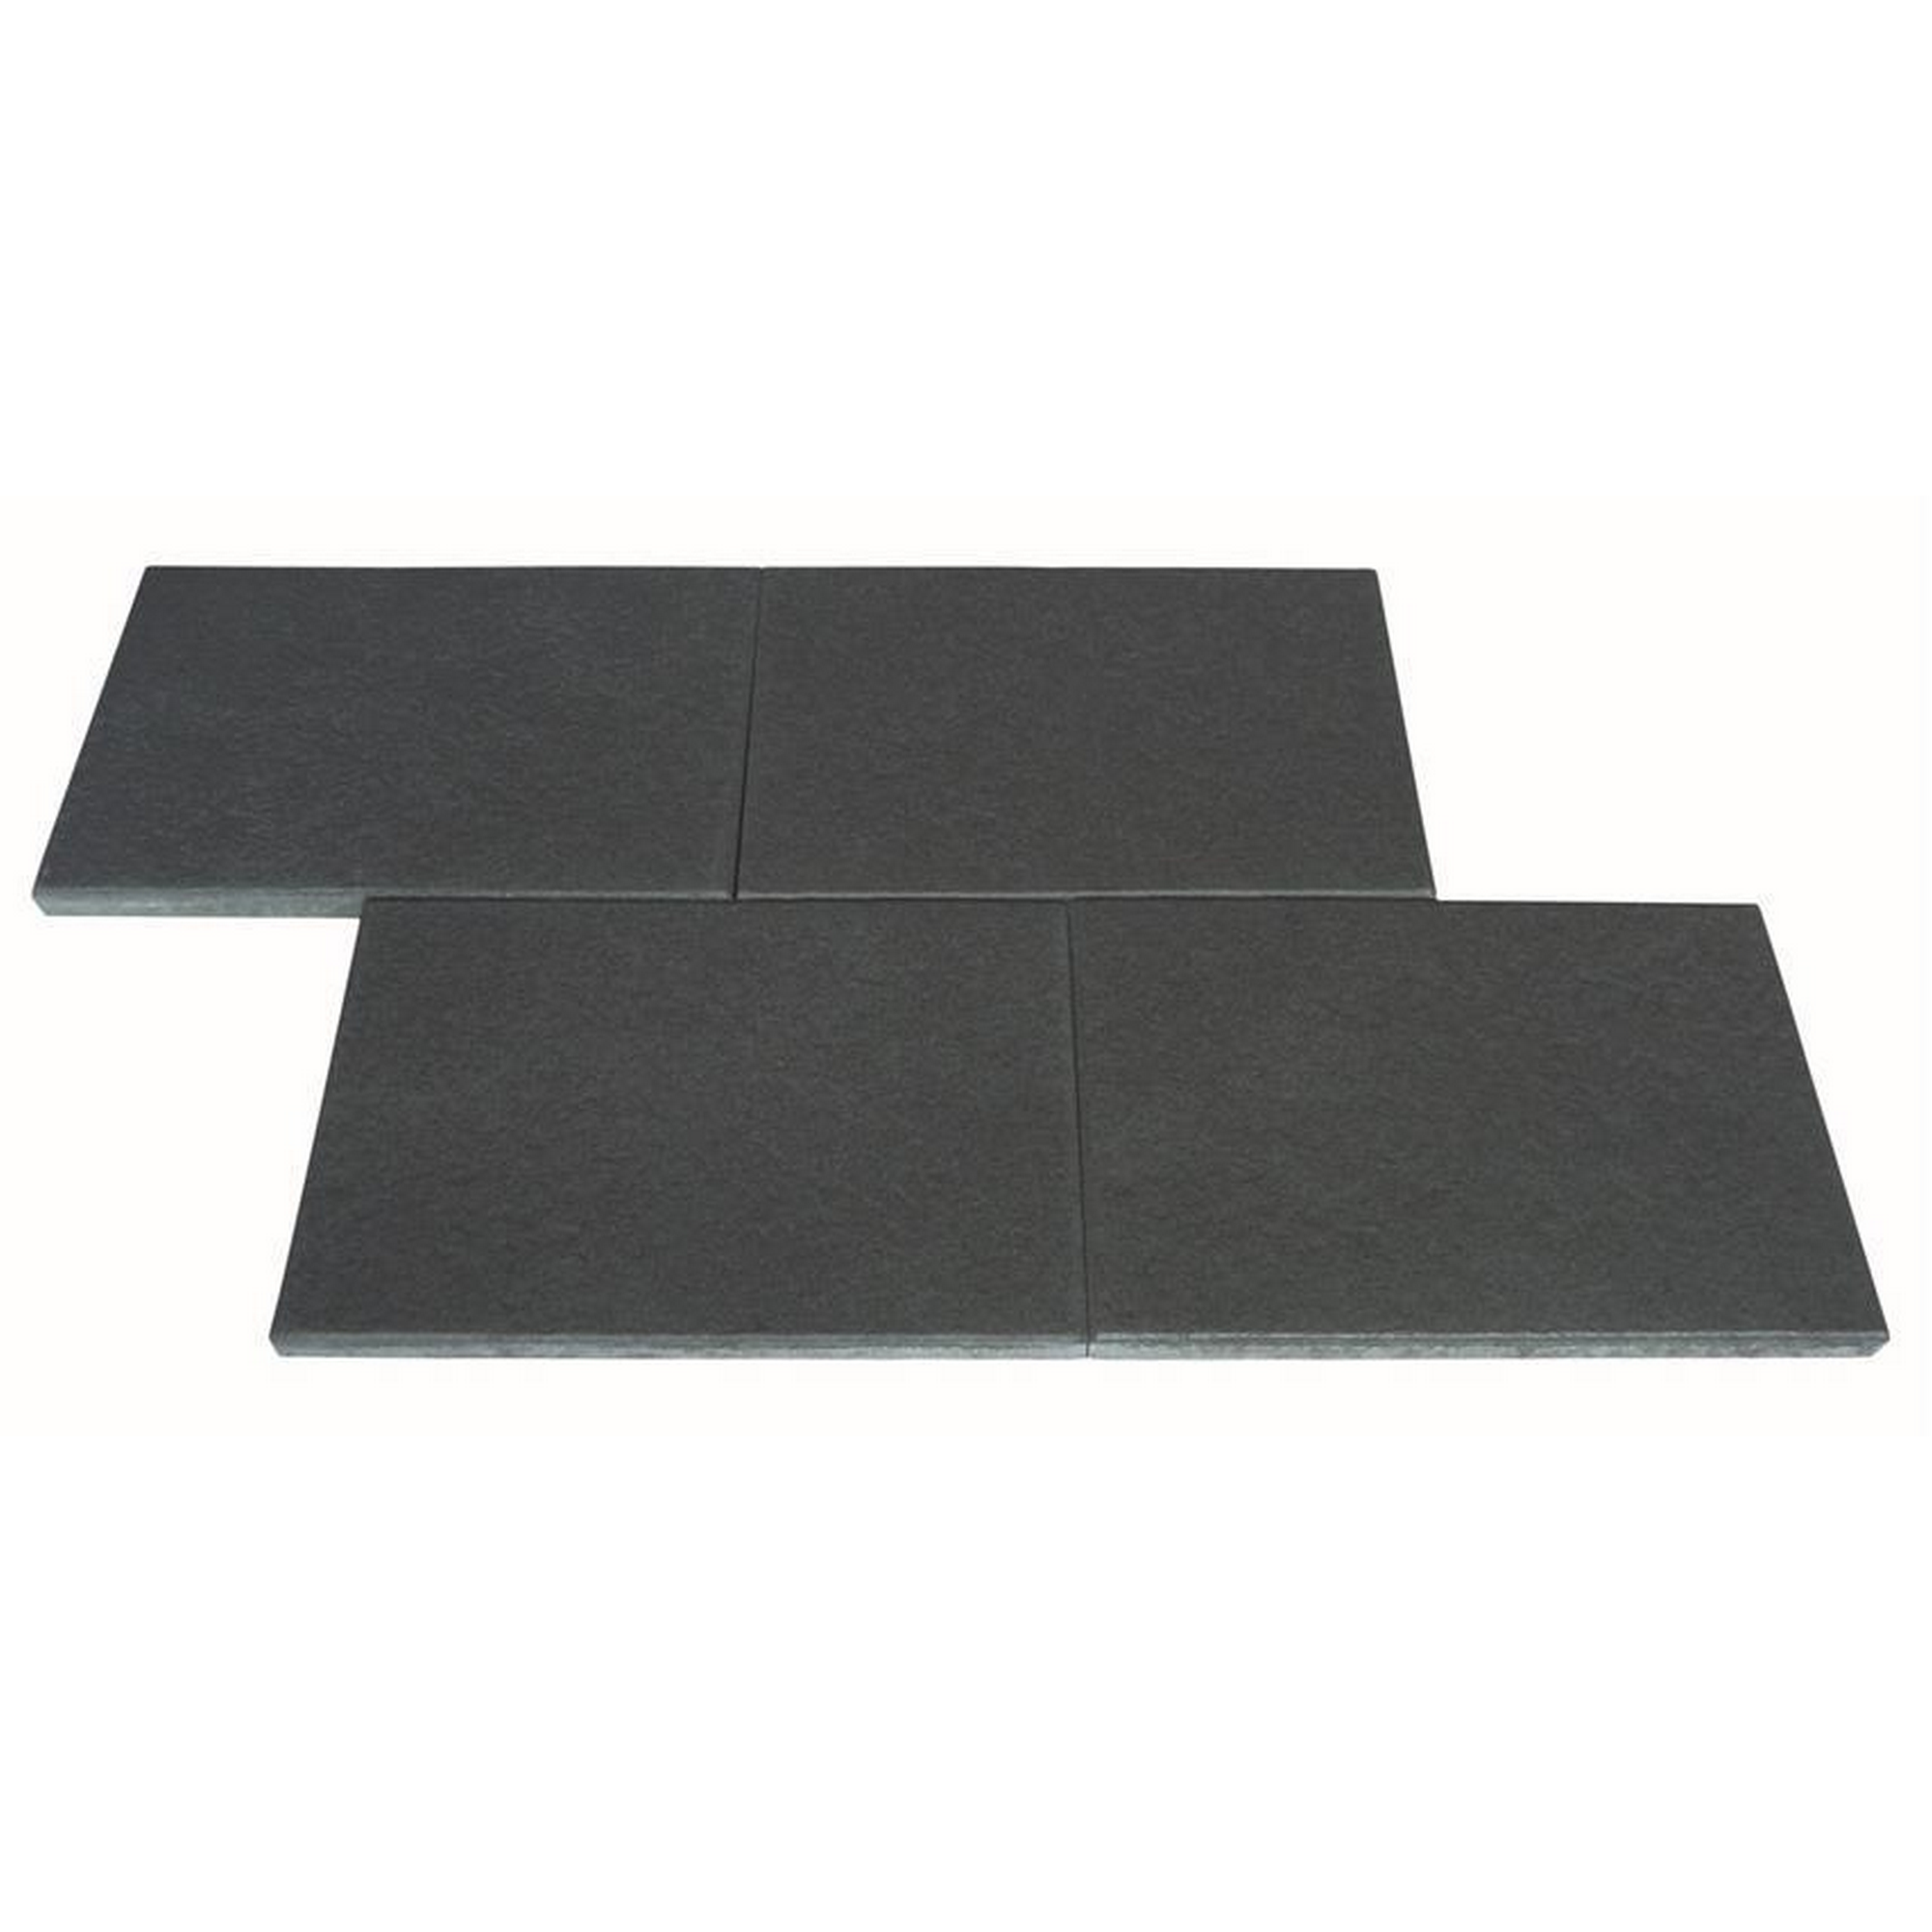 Terrassenplatte 'T-Court Selection' schwarz-basalt 60 x 40 x 4 cm + product picture